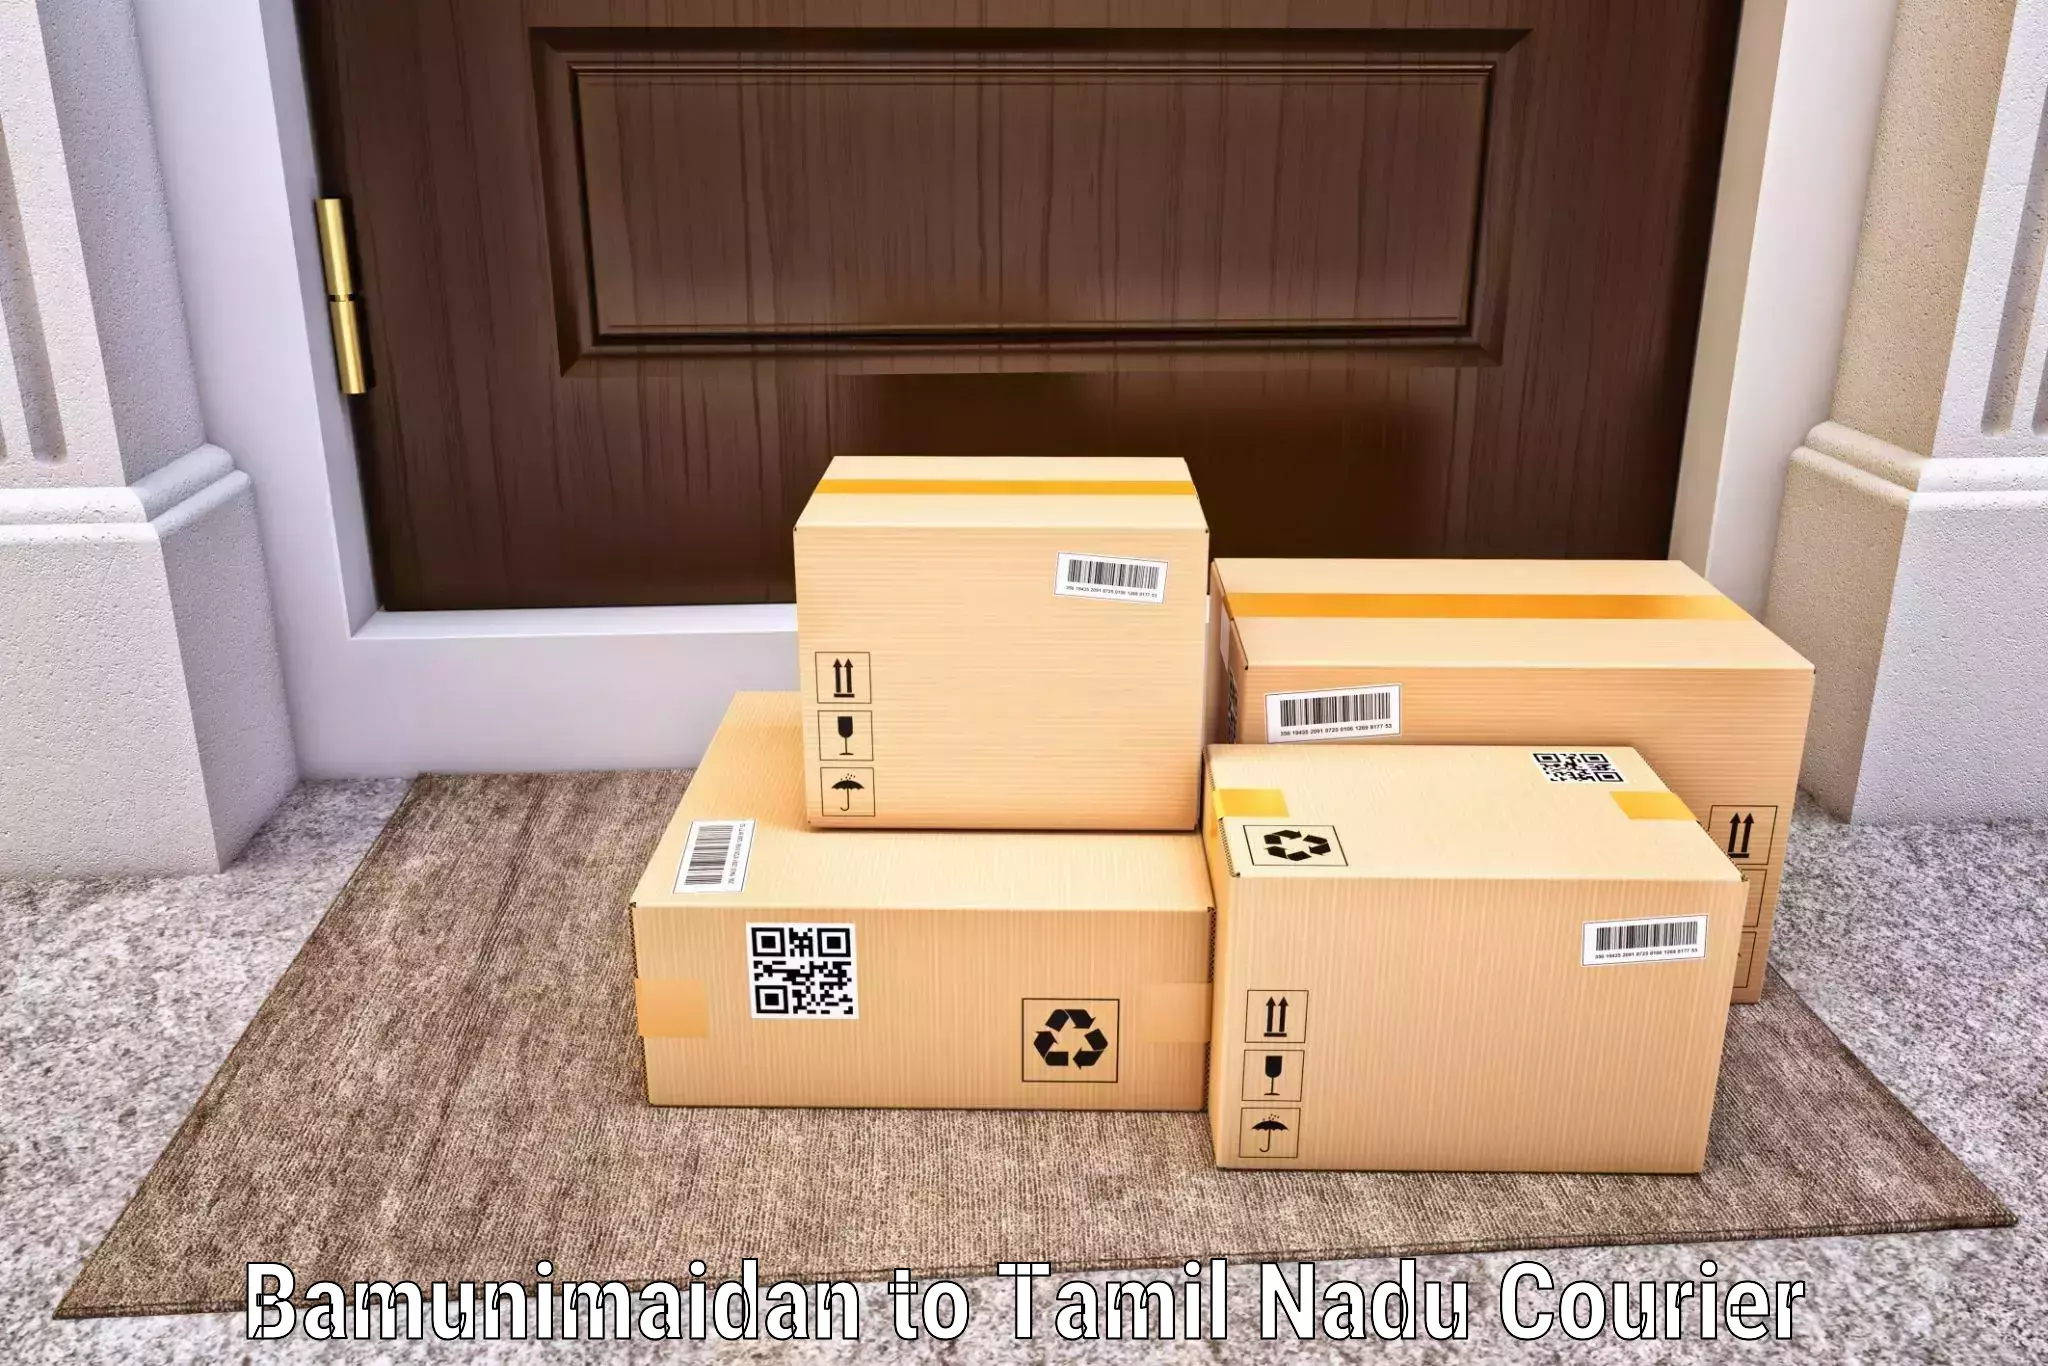 Efficient parcel delivery Bamunimaidan to Nilgiris